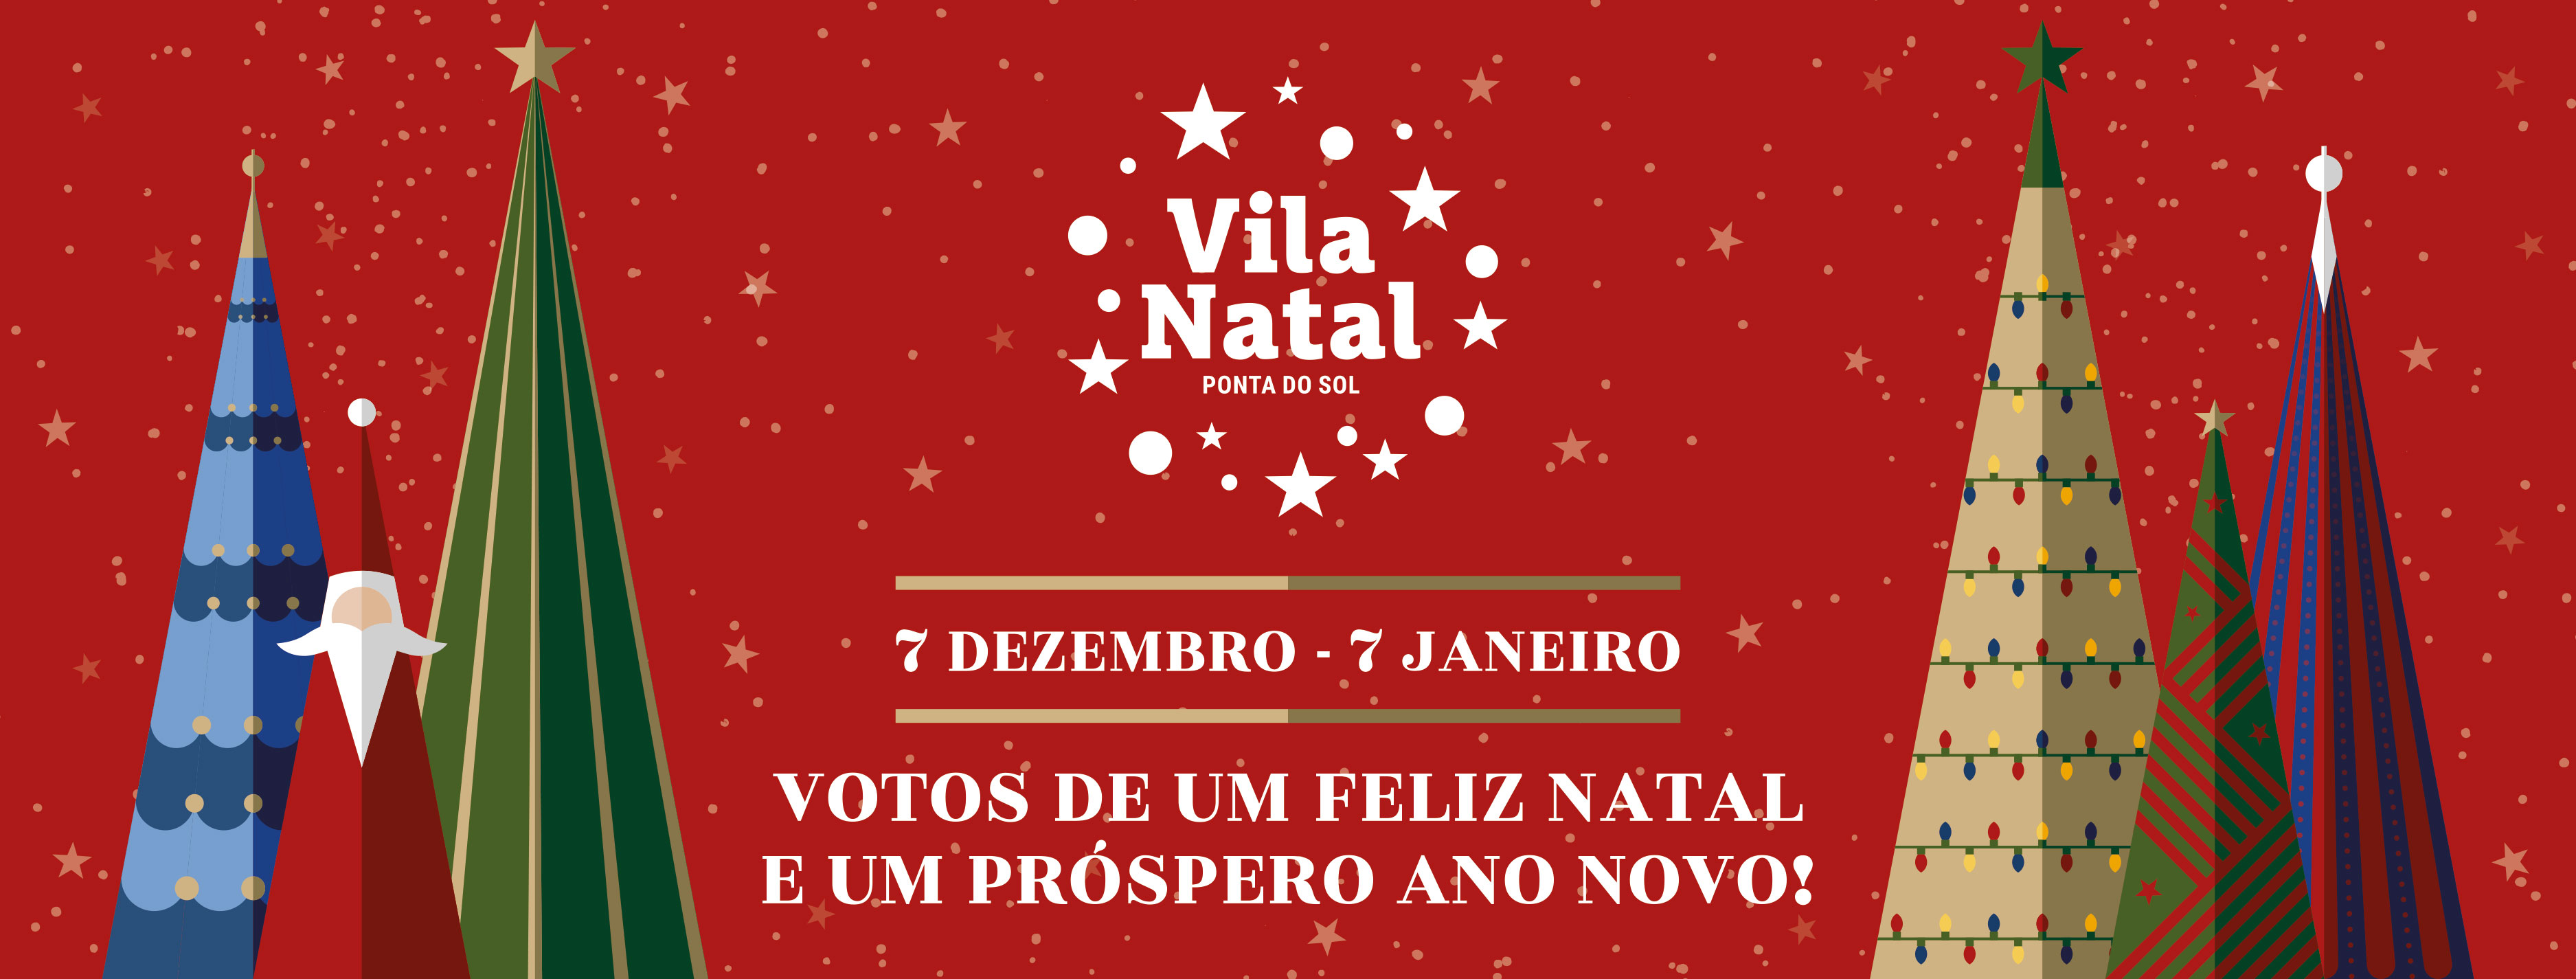 Vila_Natal_Ponta_do_Sol_2021